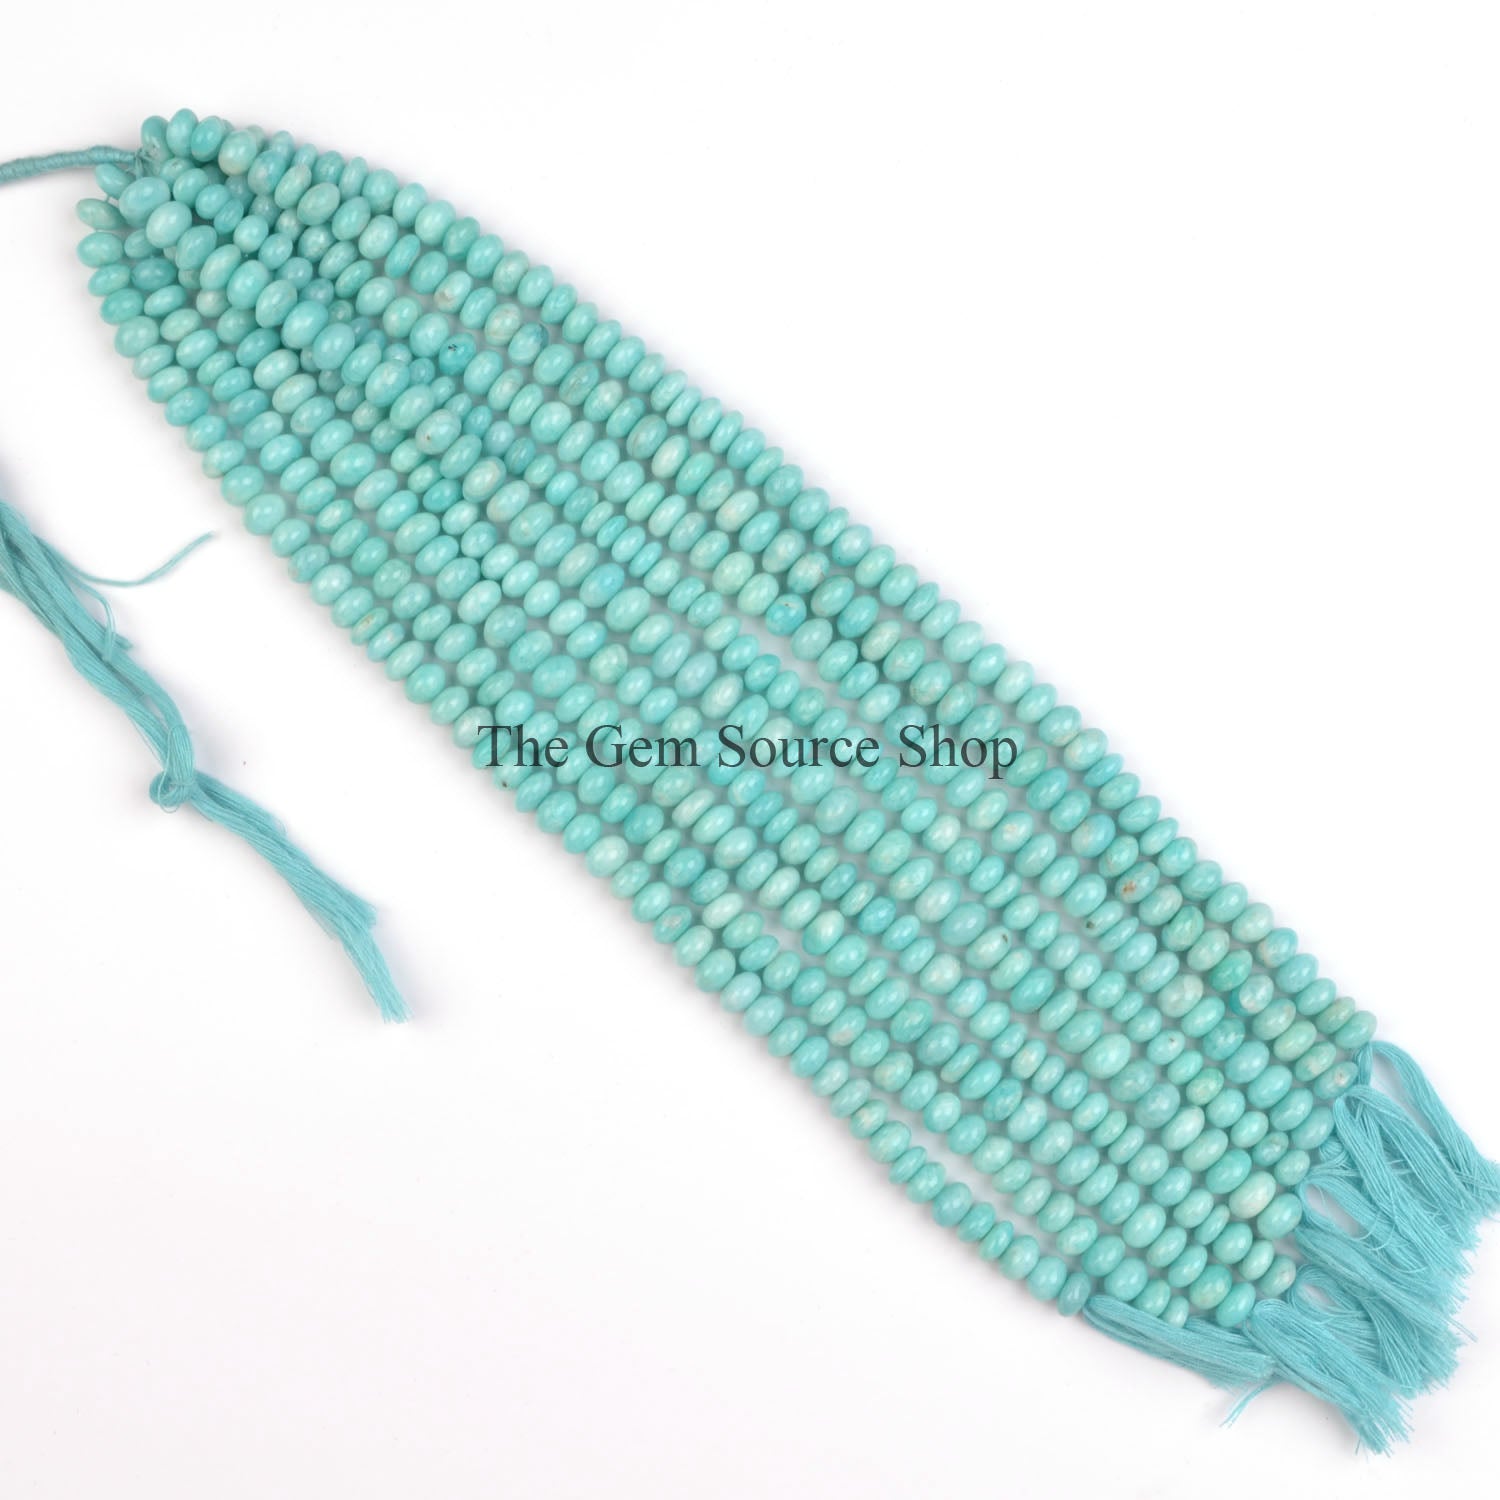 Amazonite Smooth Beads, Plain Rondelle Beads, Amazonite Gemstone Beads, Wholesale Beads